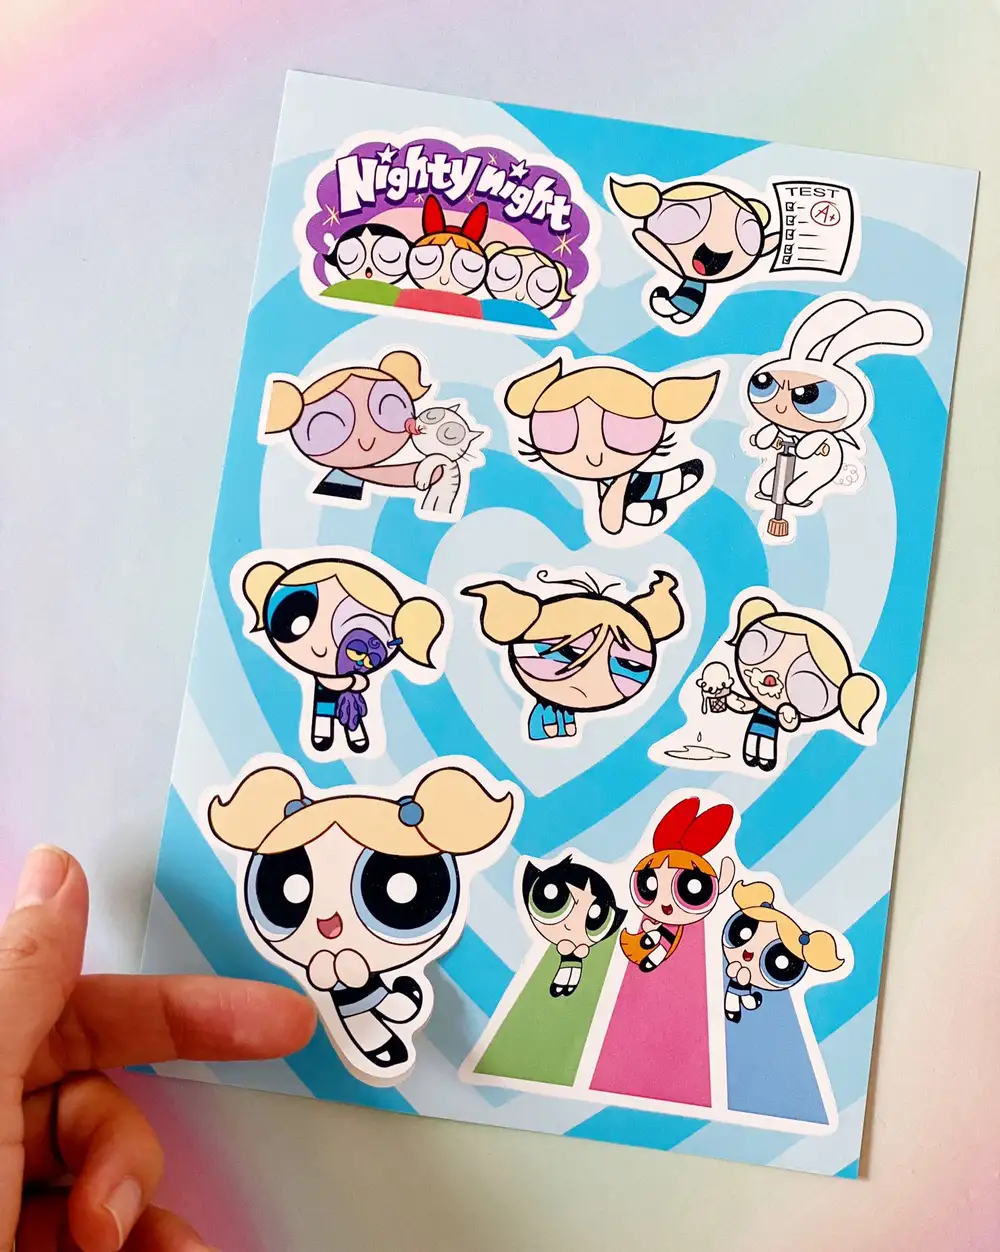 Powerpuff Girls Best Friends Forever Rengarenk Sticker Seti 3'lü